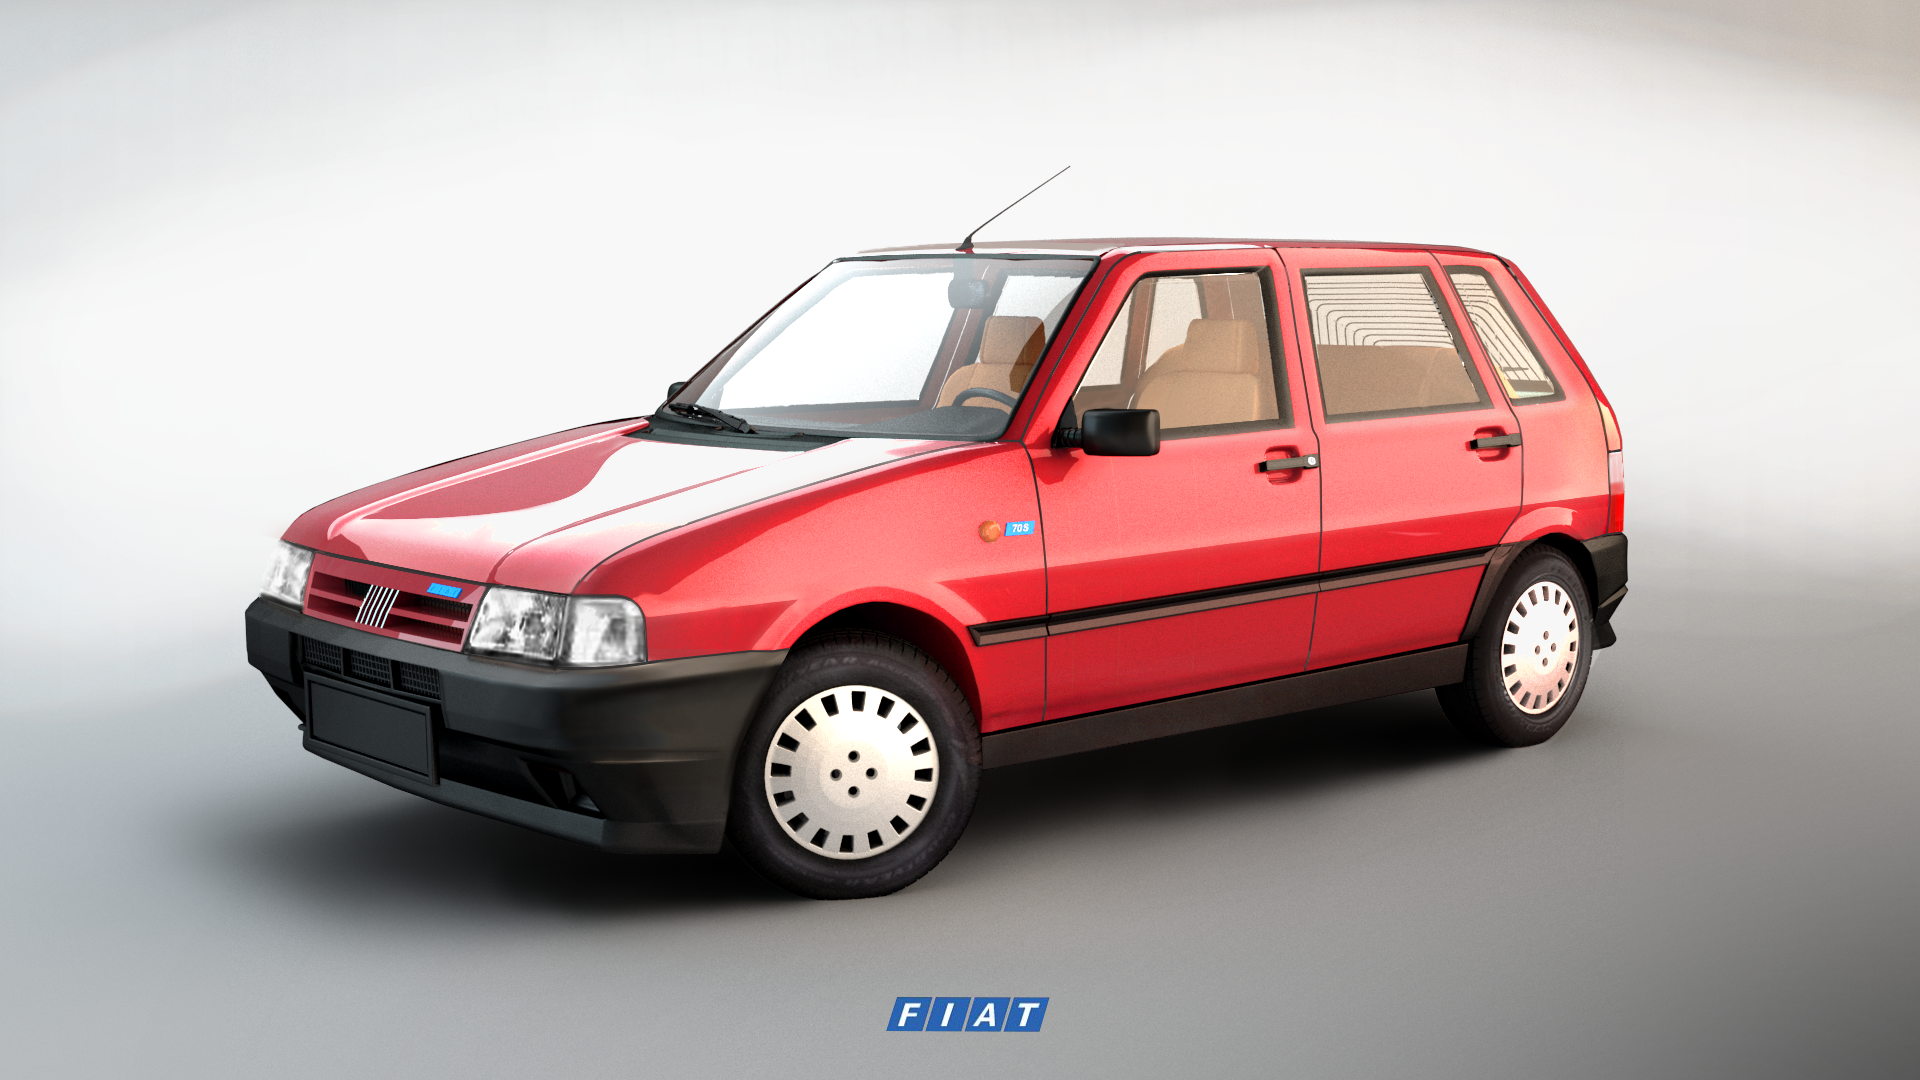 Fiat Uno 70S 3D model #Uno, #Fiat, #model. Fiat uno, Fiat, 70s car